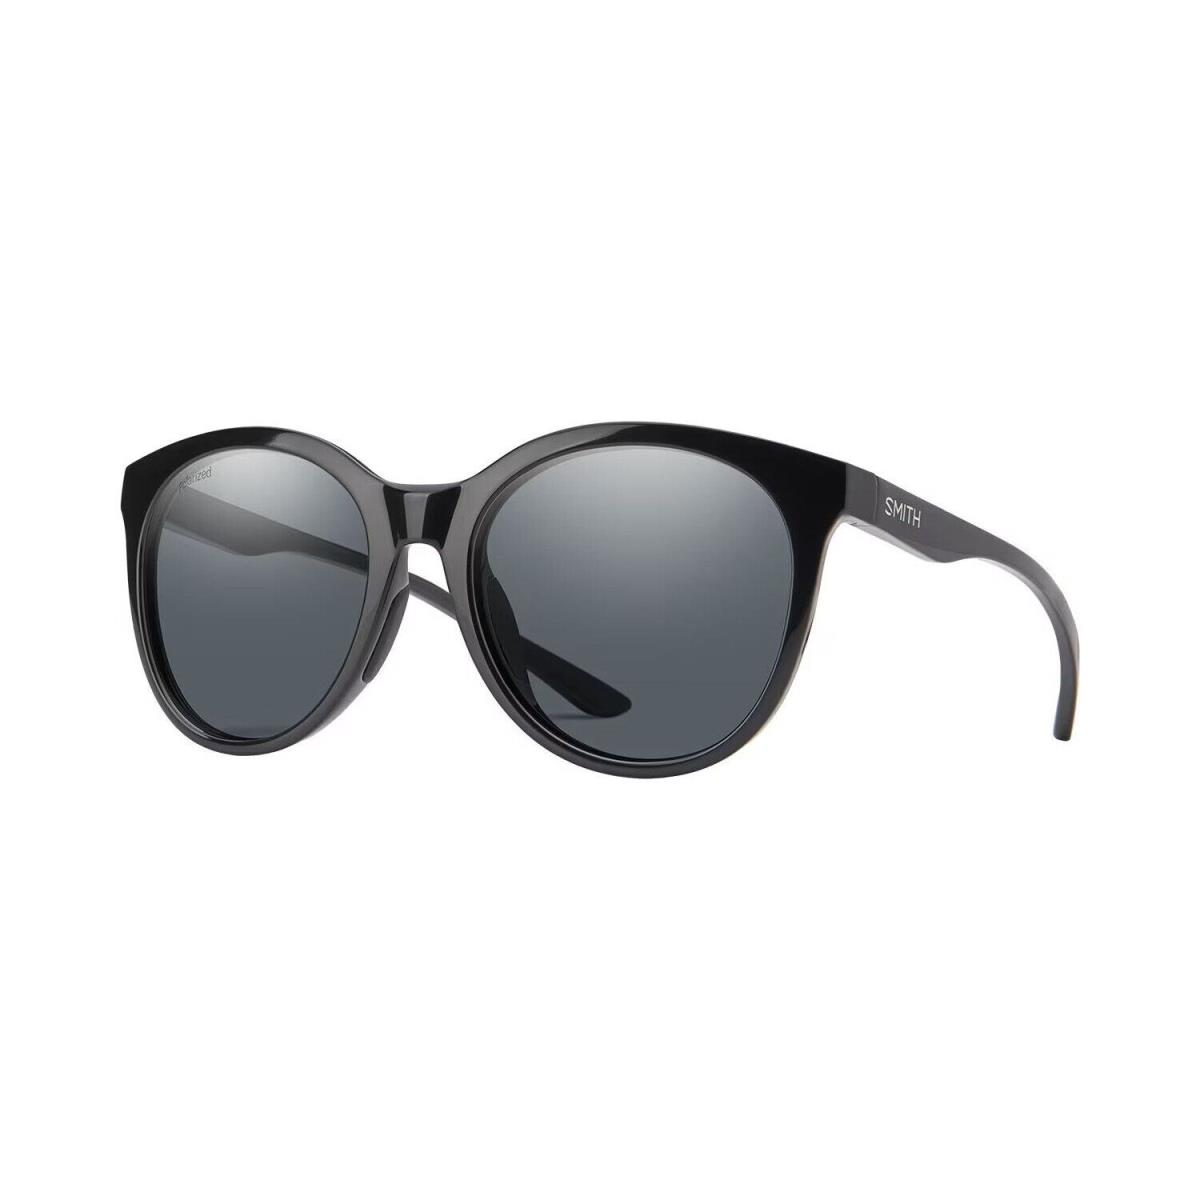 Smith Optics Bayside Polarized Sunglasses - Frame: